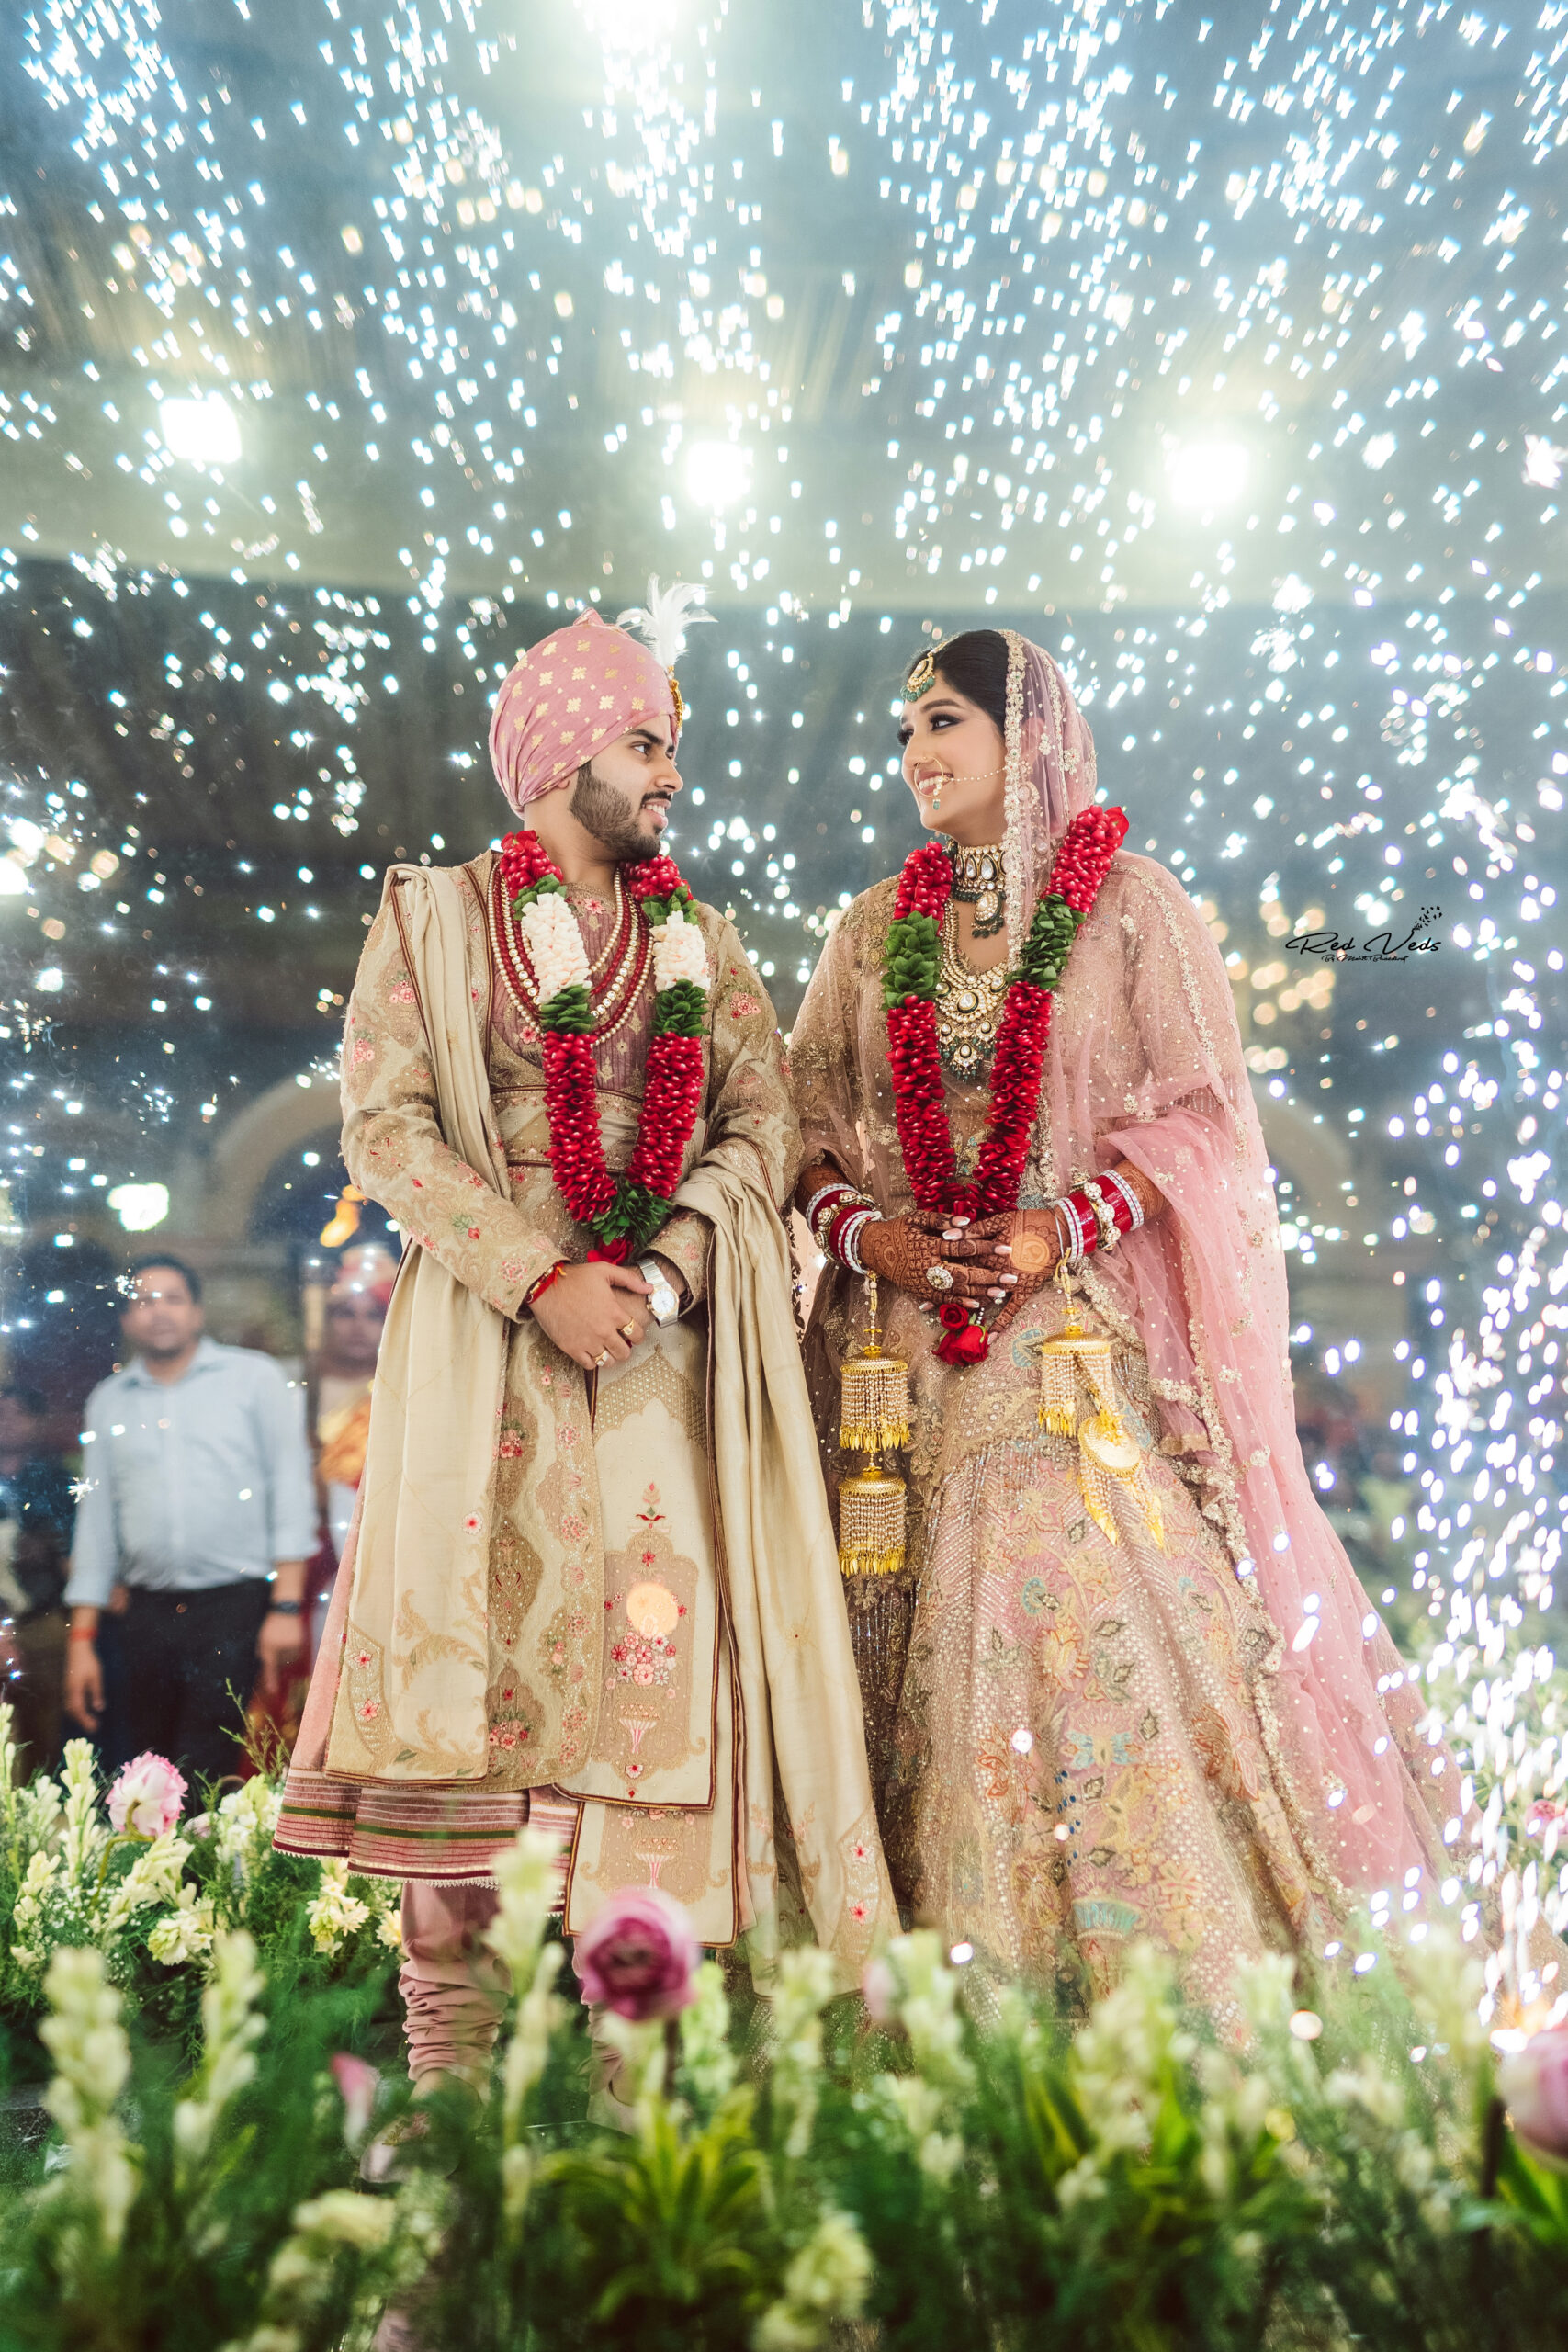 wedding pose|| couple pose|| jaimala pose|| indian wedding|| lahanga pic||  #weddingpose#lahanga Raja - YouTube